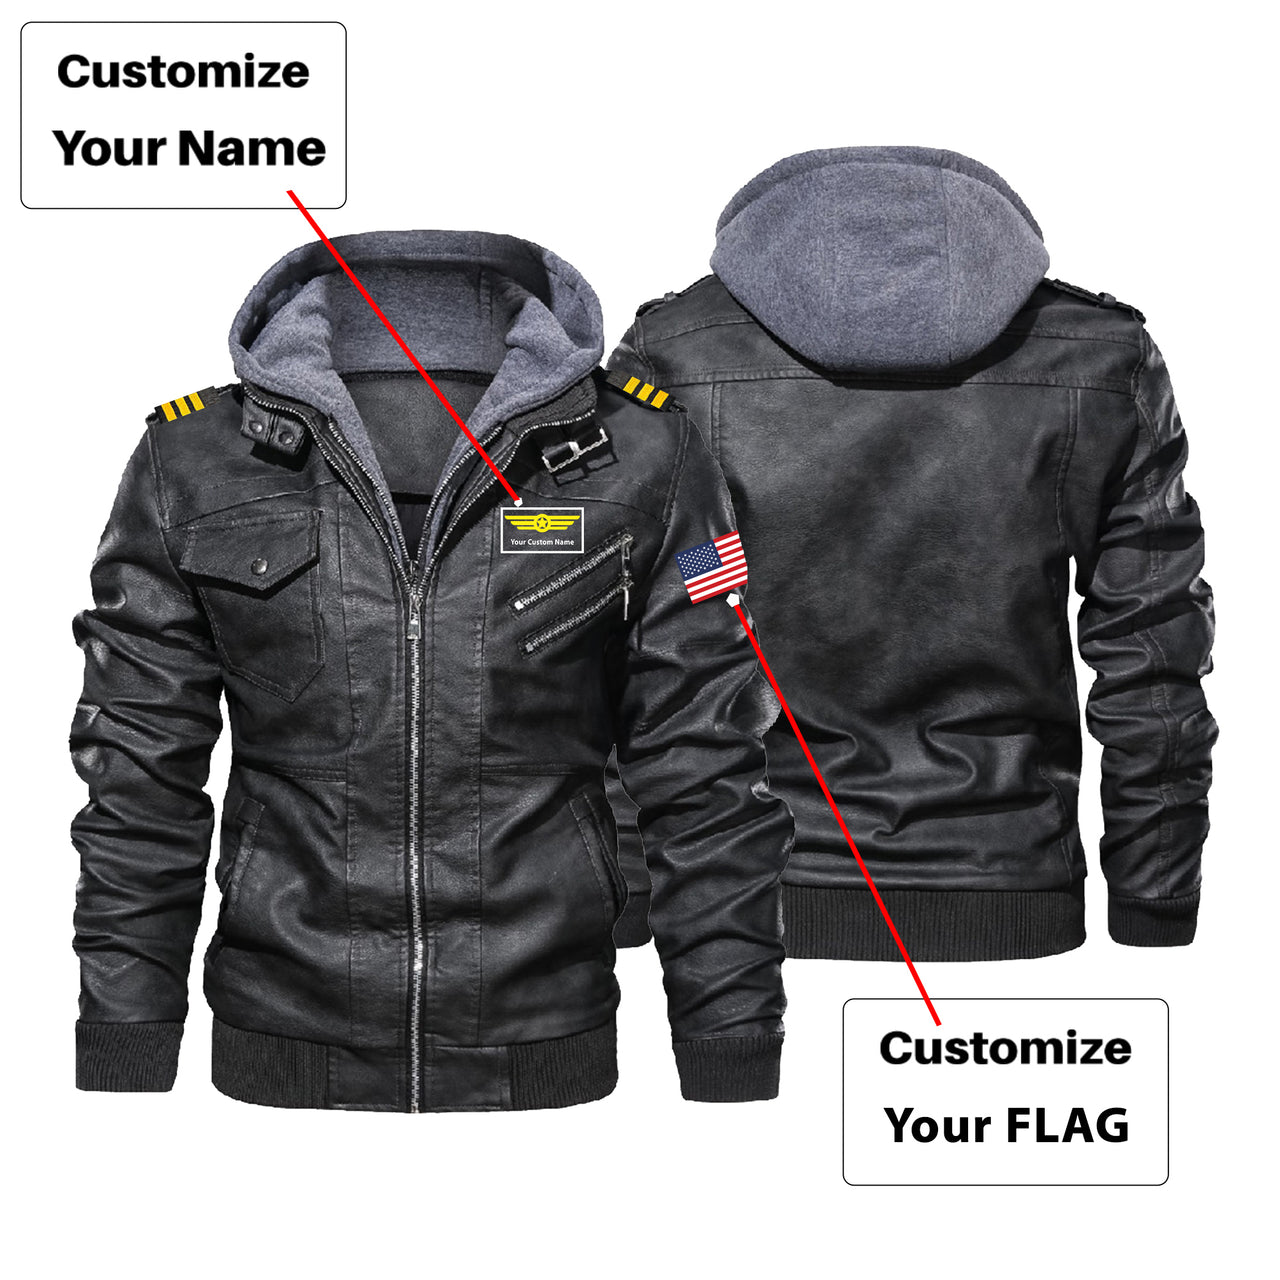 Custom Flag & Name with EPAULETTES "Badge 1" Designed Hooded Leather Jackets